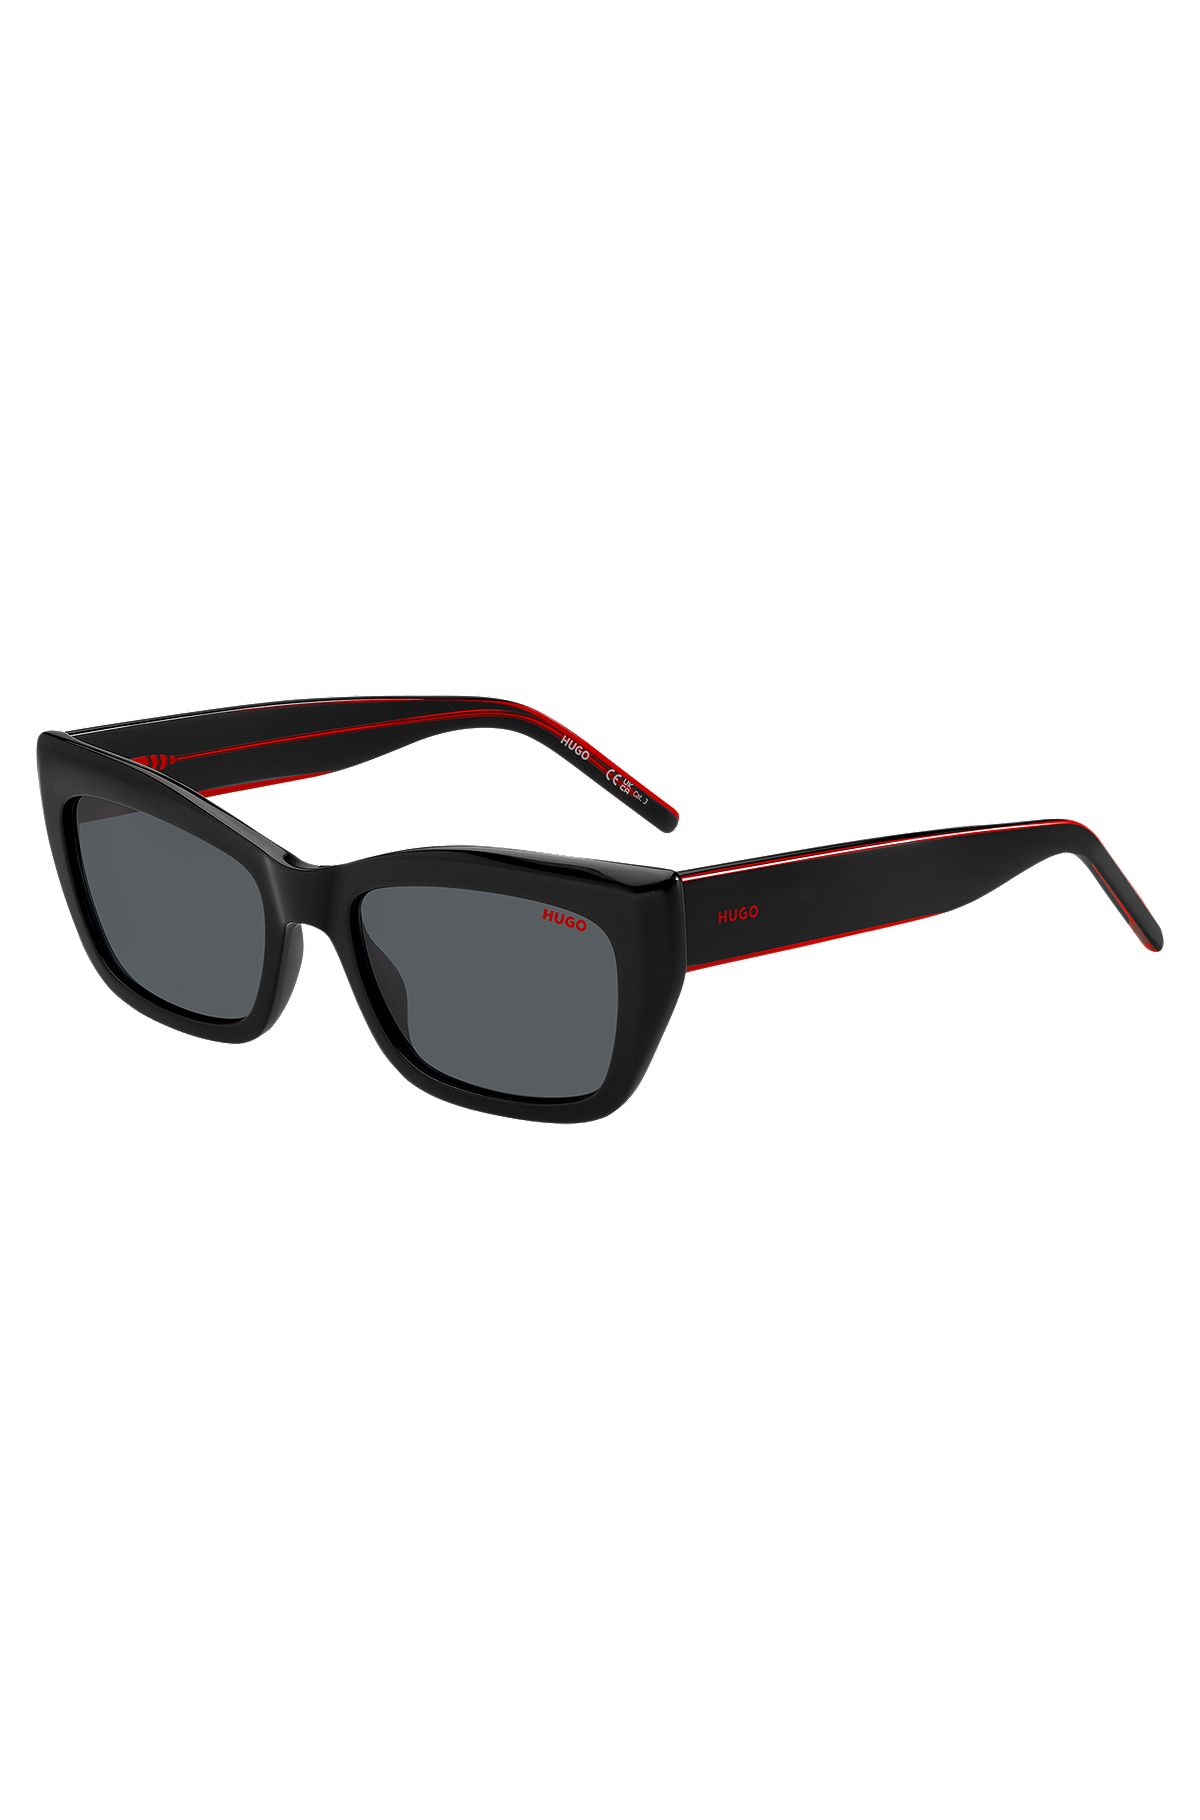 Sonnenbrille aus schwarzem Acetat mit mehrlagigen Bügeln in Signature-Rot, Schwarz